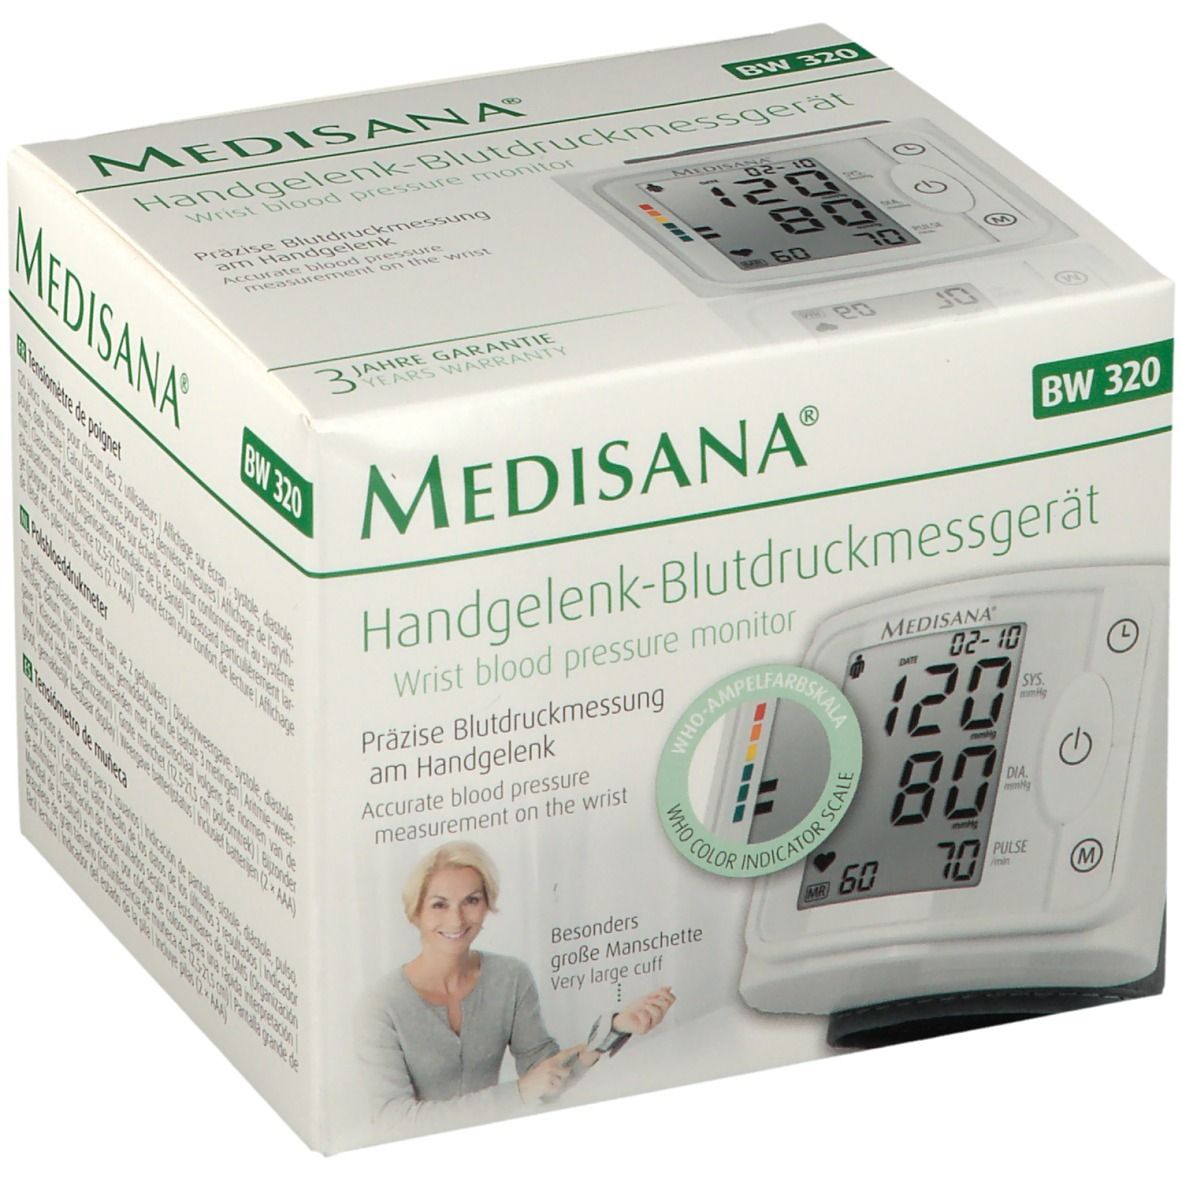 BW - 320 Handgelenk-Blutdruckmessgerät St Medisana Redcare Apotheke 1